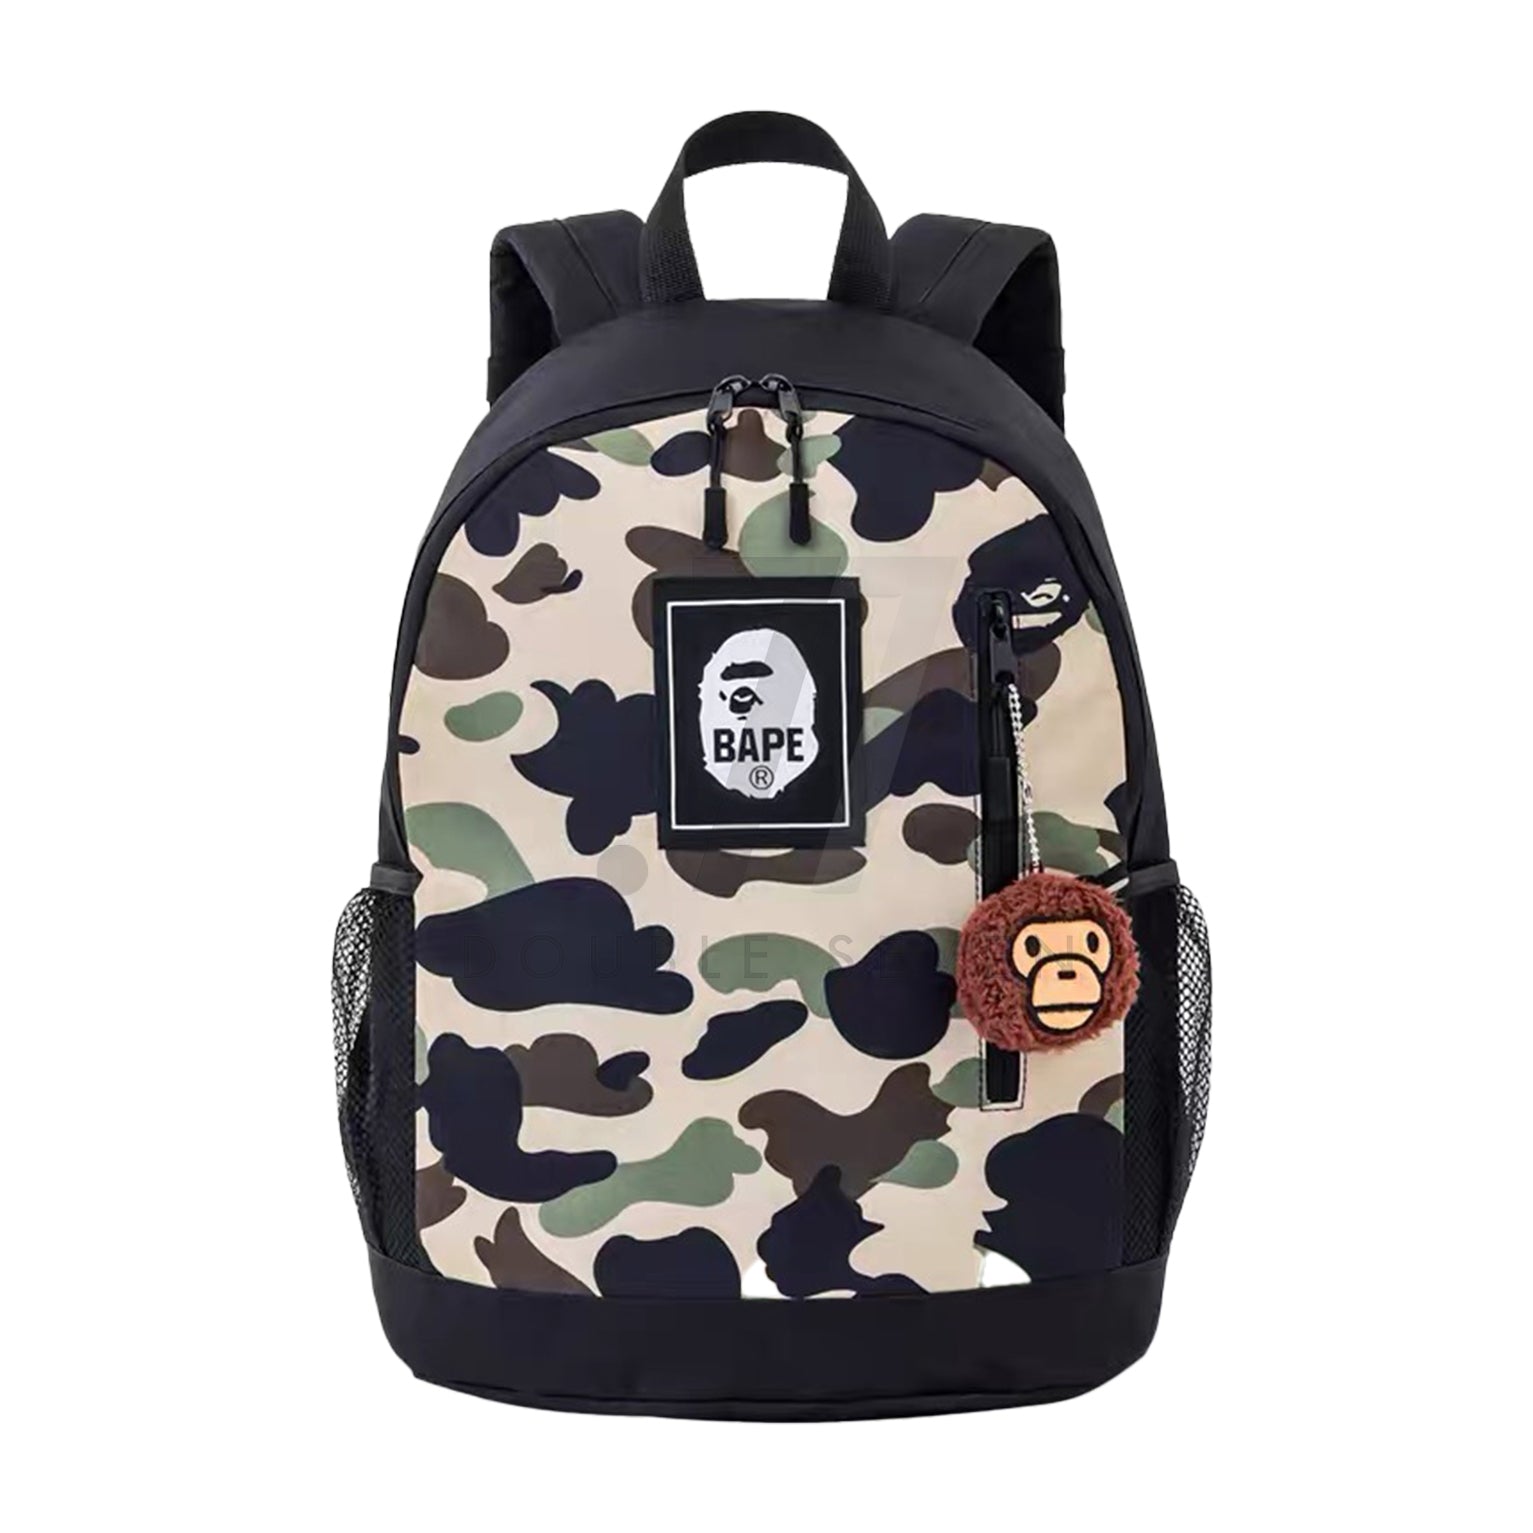 Bape Camo Backpack & Mylo Charm